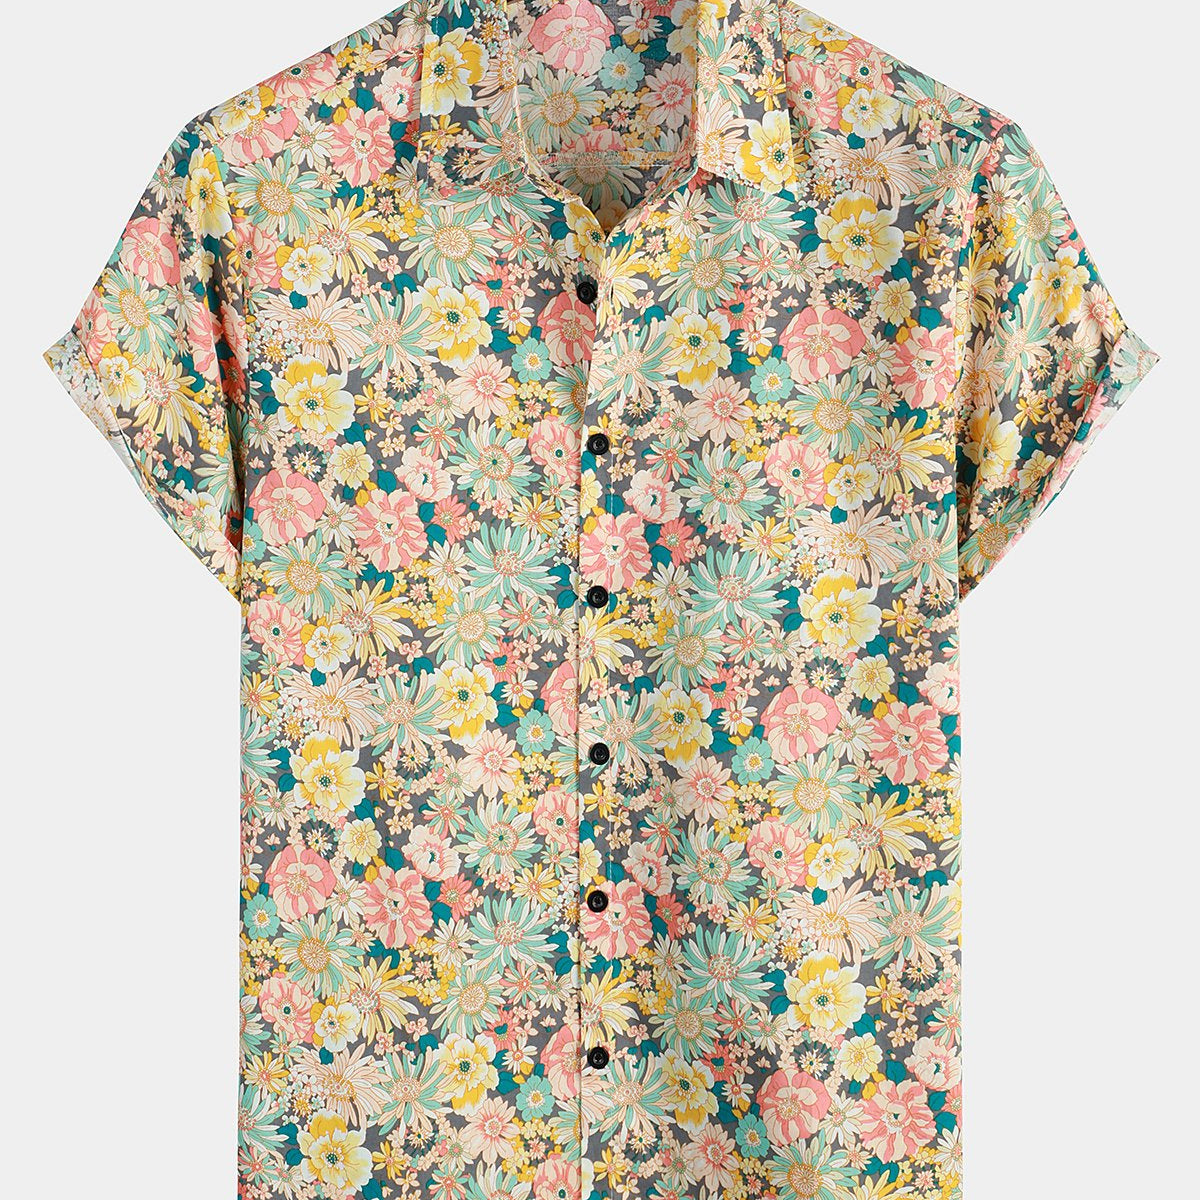 Men's Vintage Floral Cotton Button Up Short Sleeve Shirt